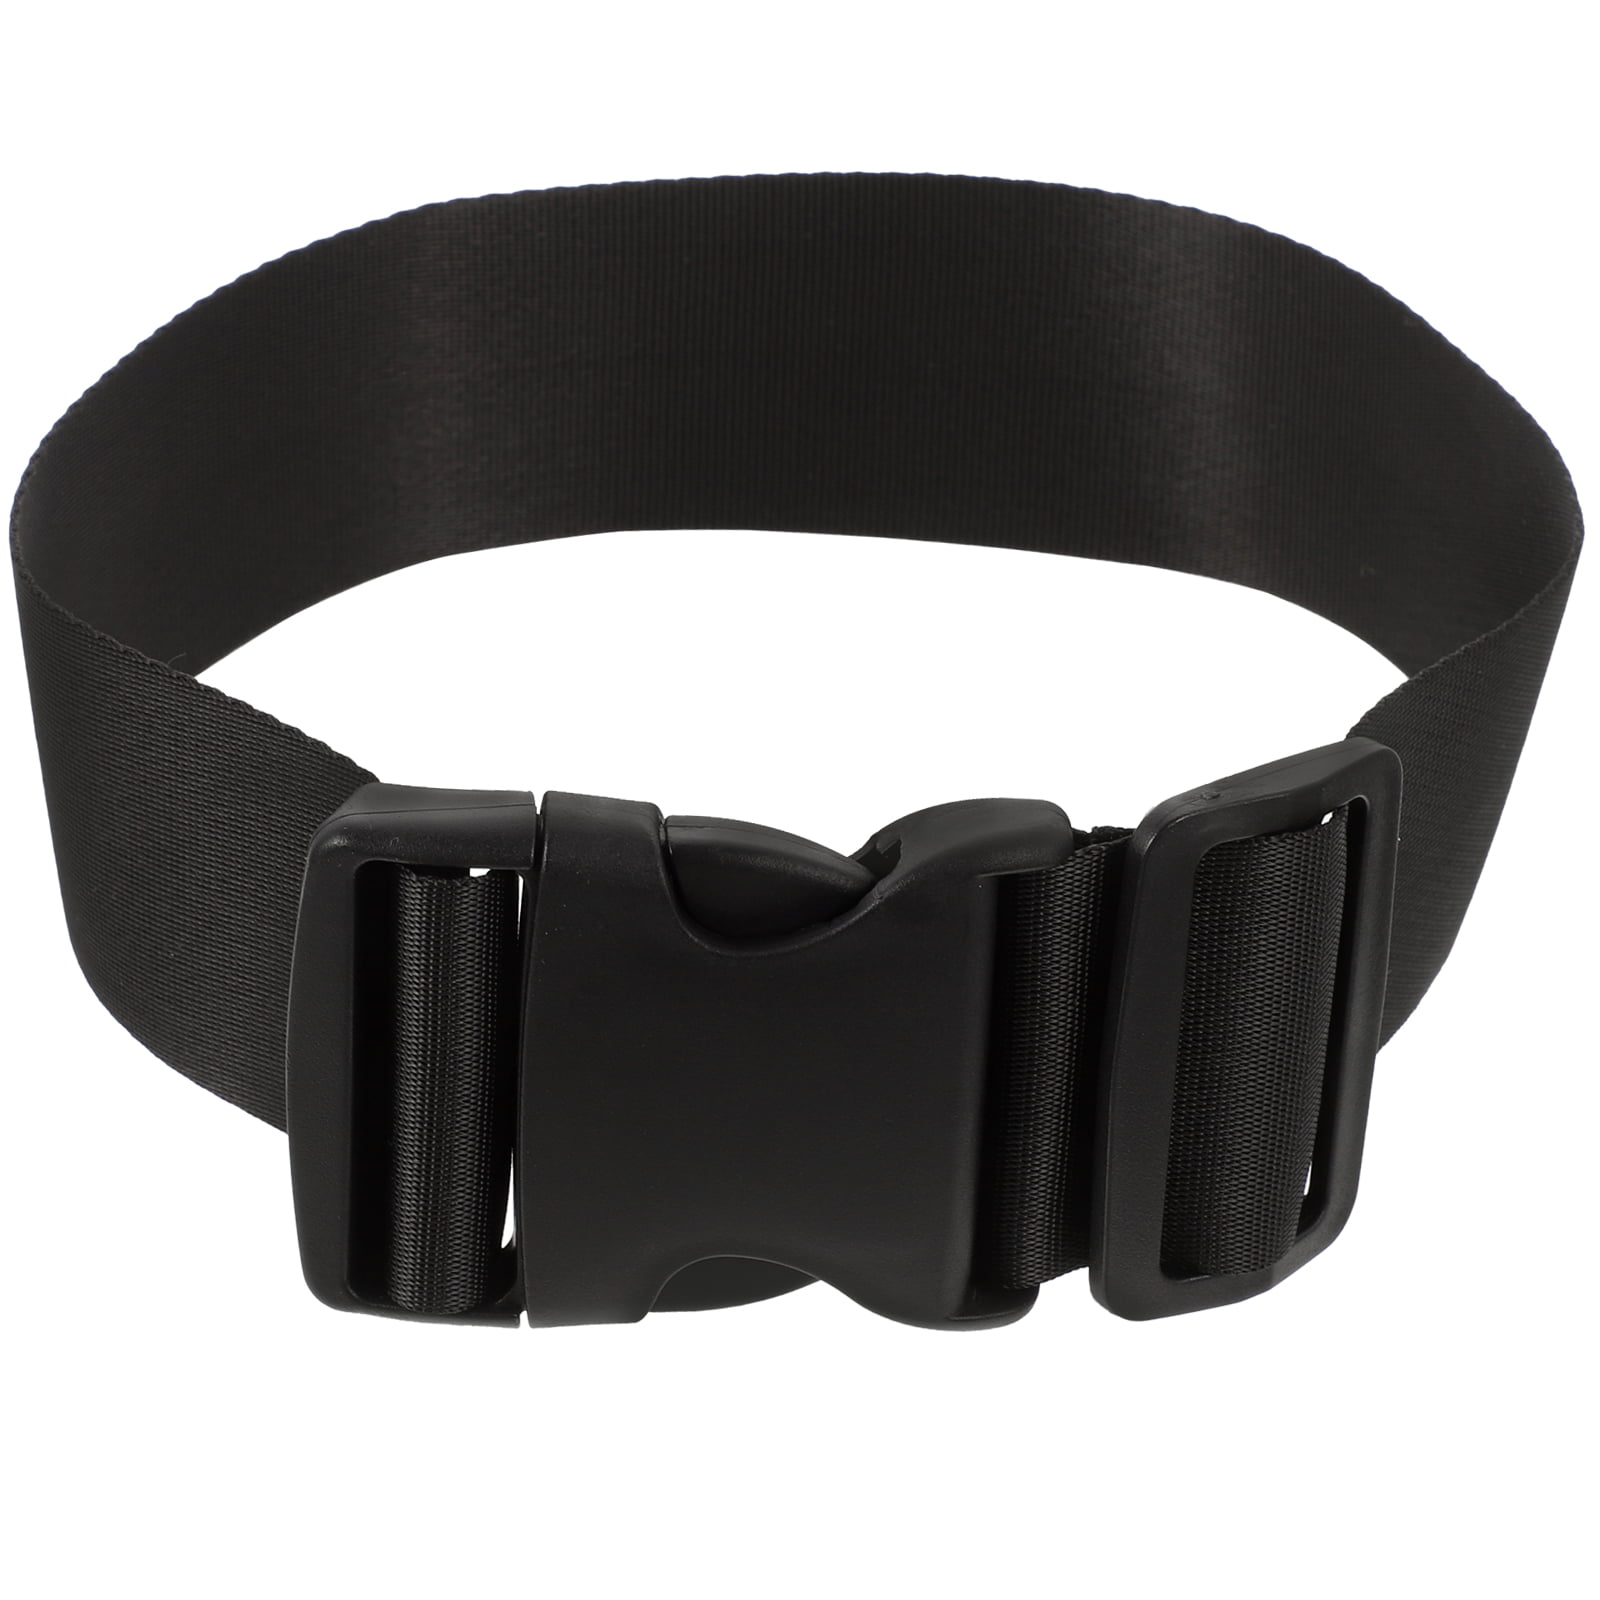 Belt Bag Extender Strap – Black, Beige – The Darling Effect